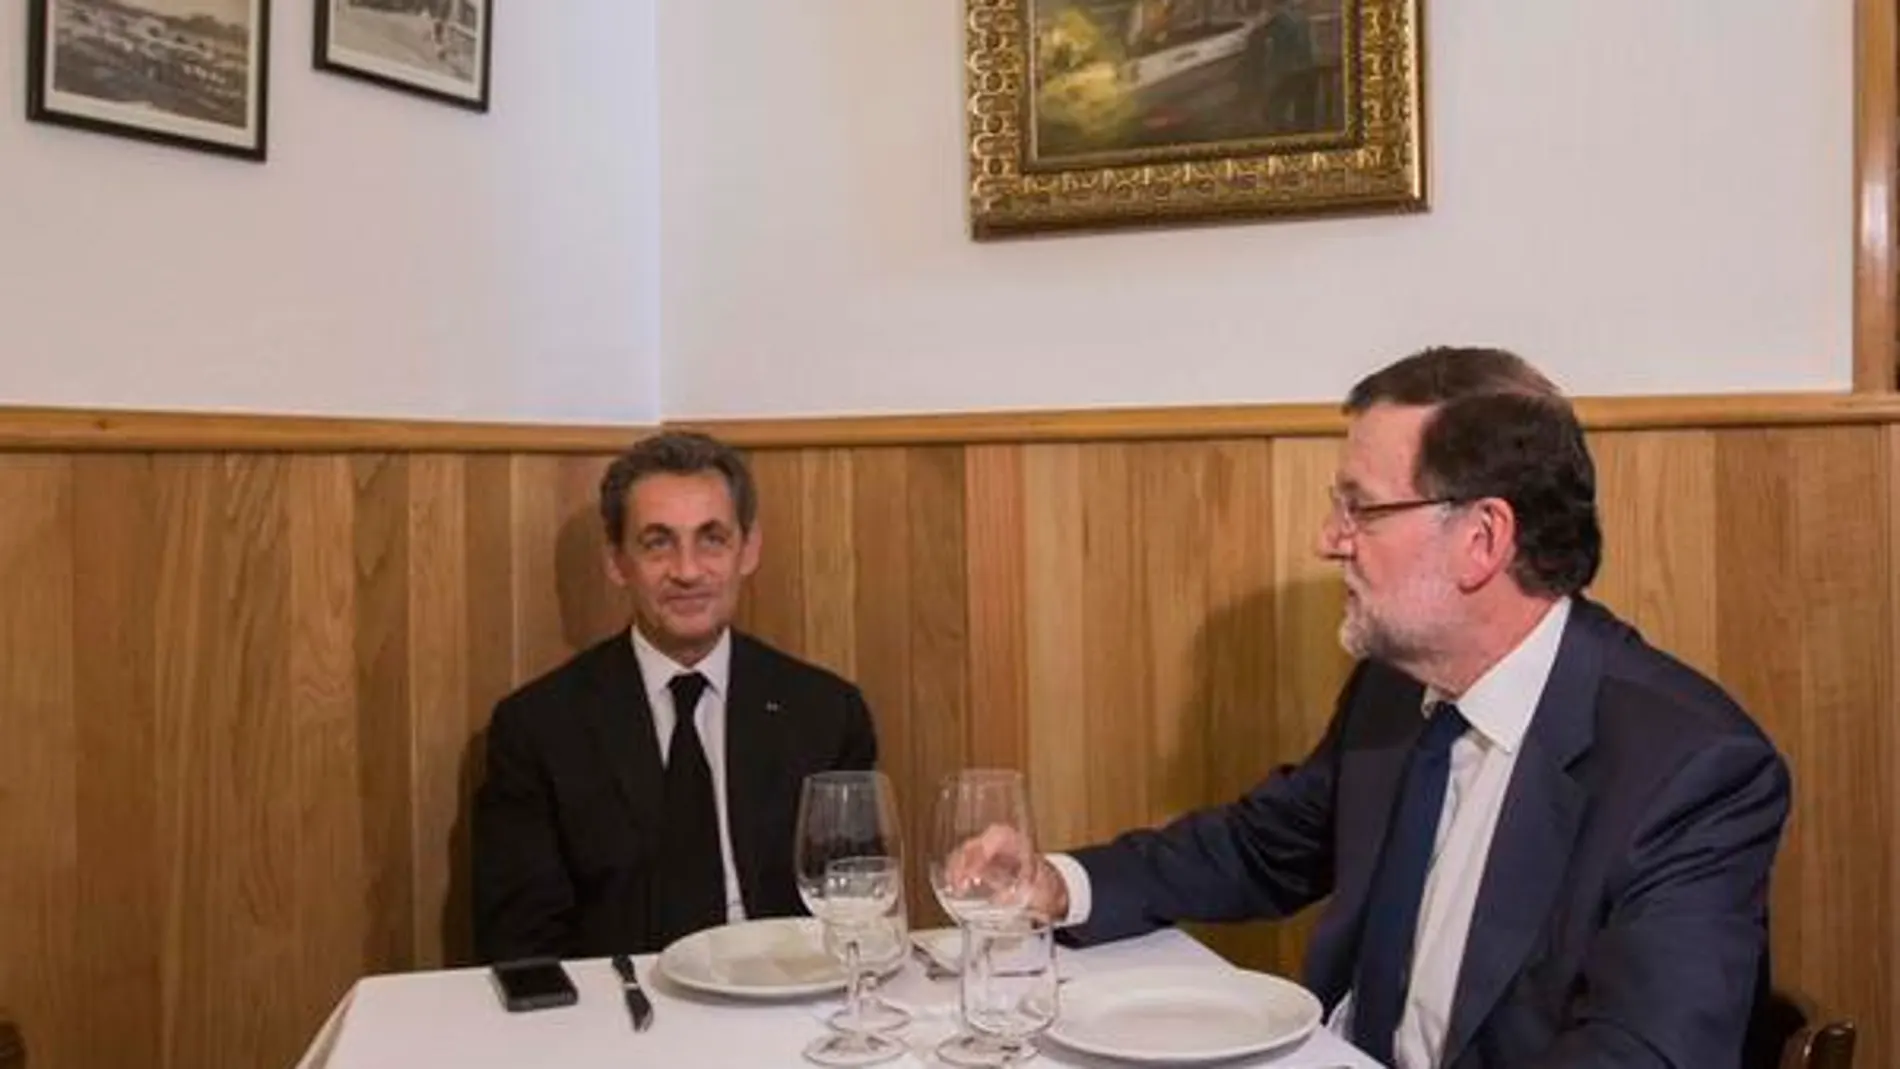 Imagen difundida por el presidente del Gobierno, Mariano Rajoy, a través de Twitter